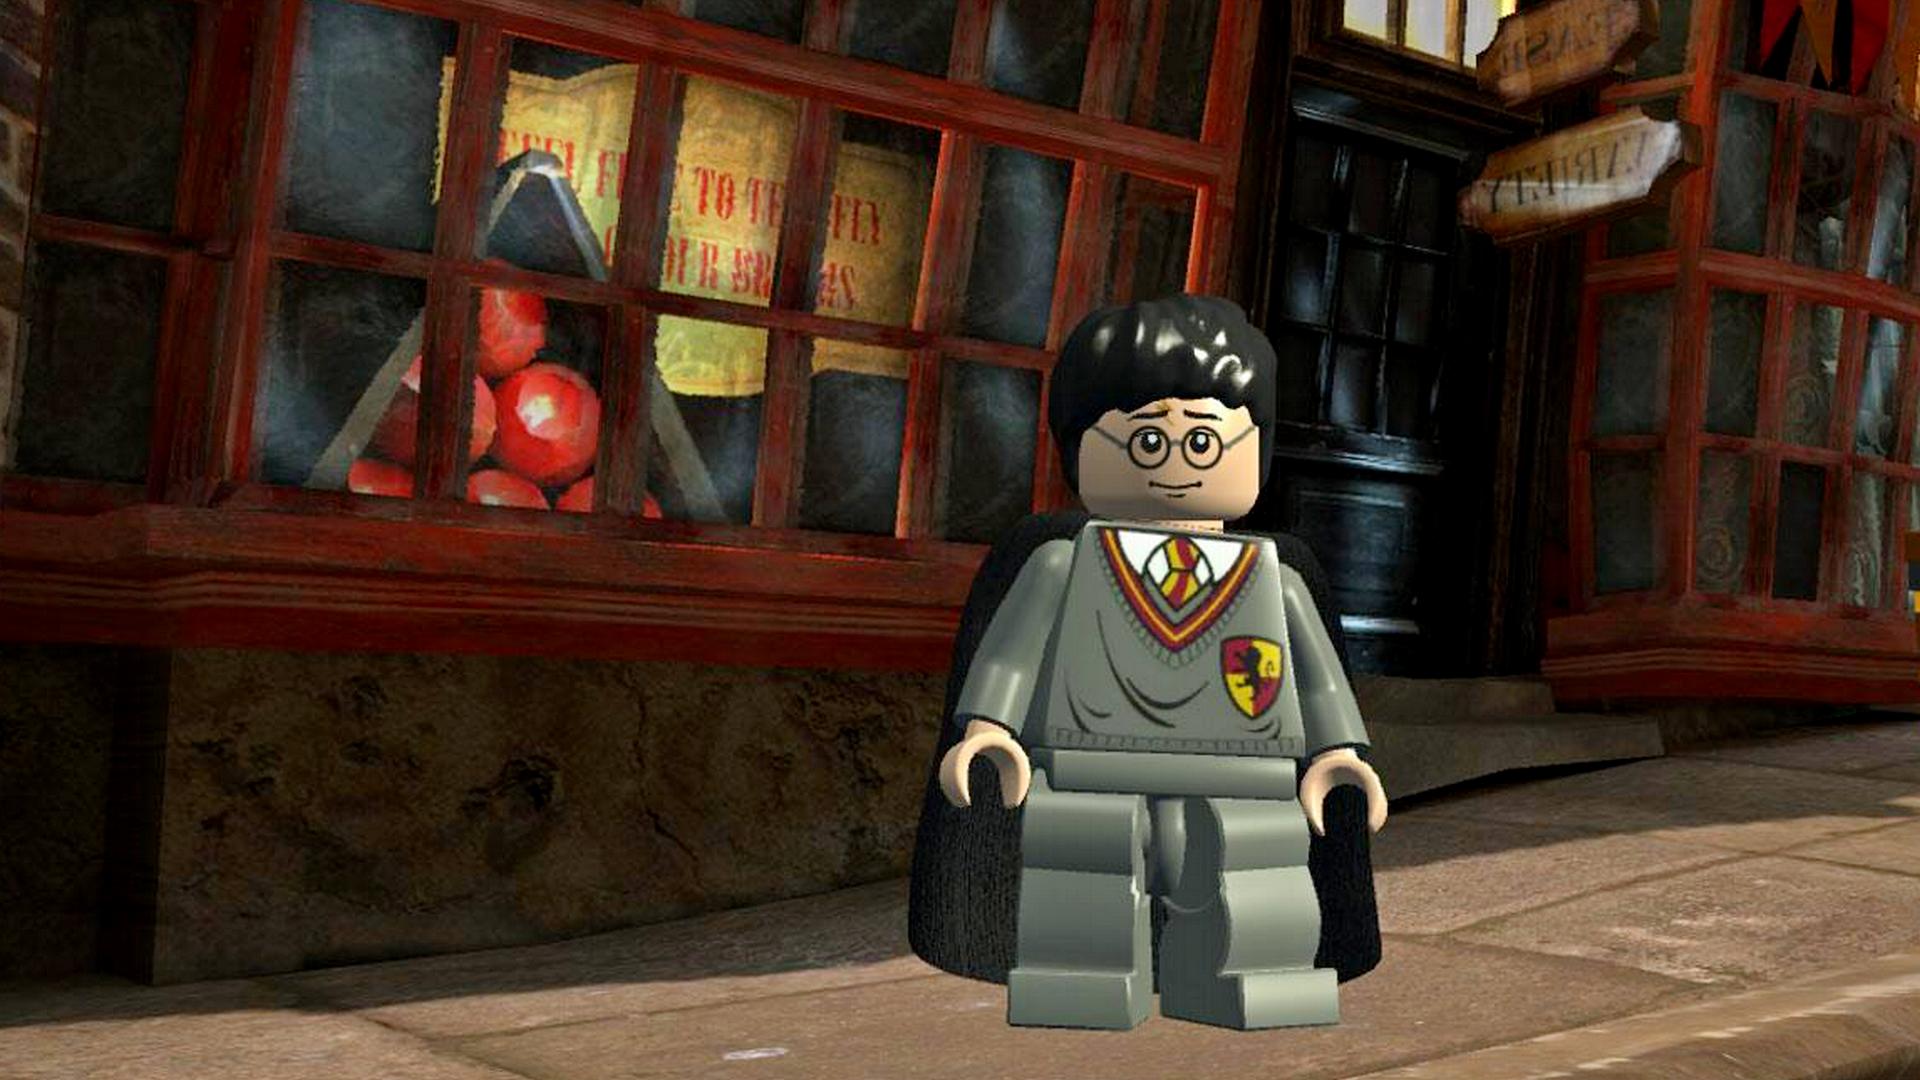 Bilder zu Lego Harry Potter: Alle Cheats für das Abenteuer in Hogwarts